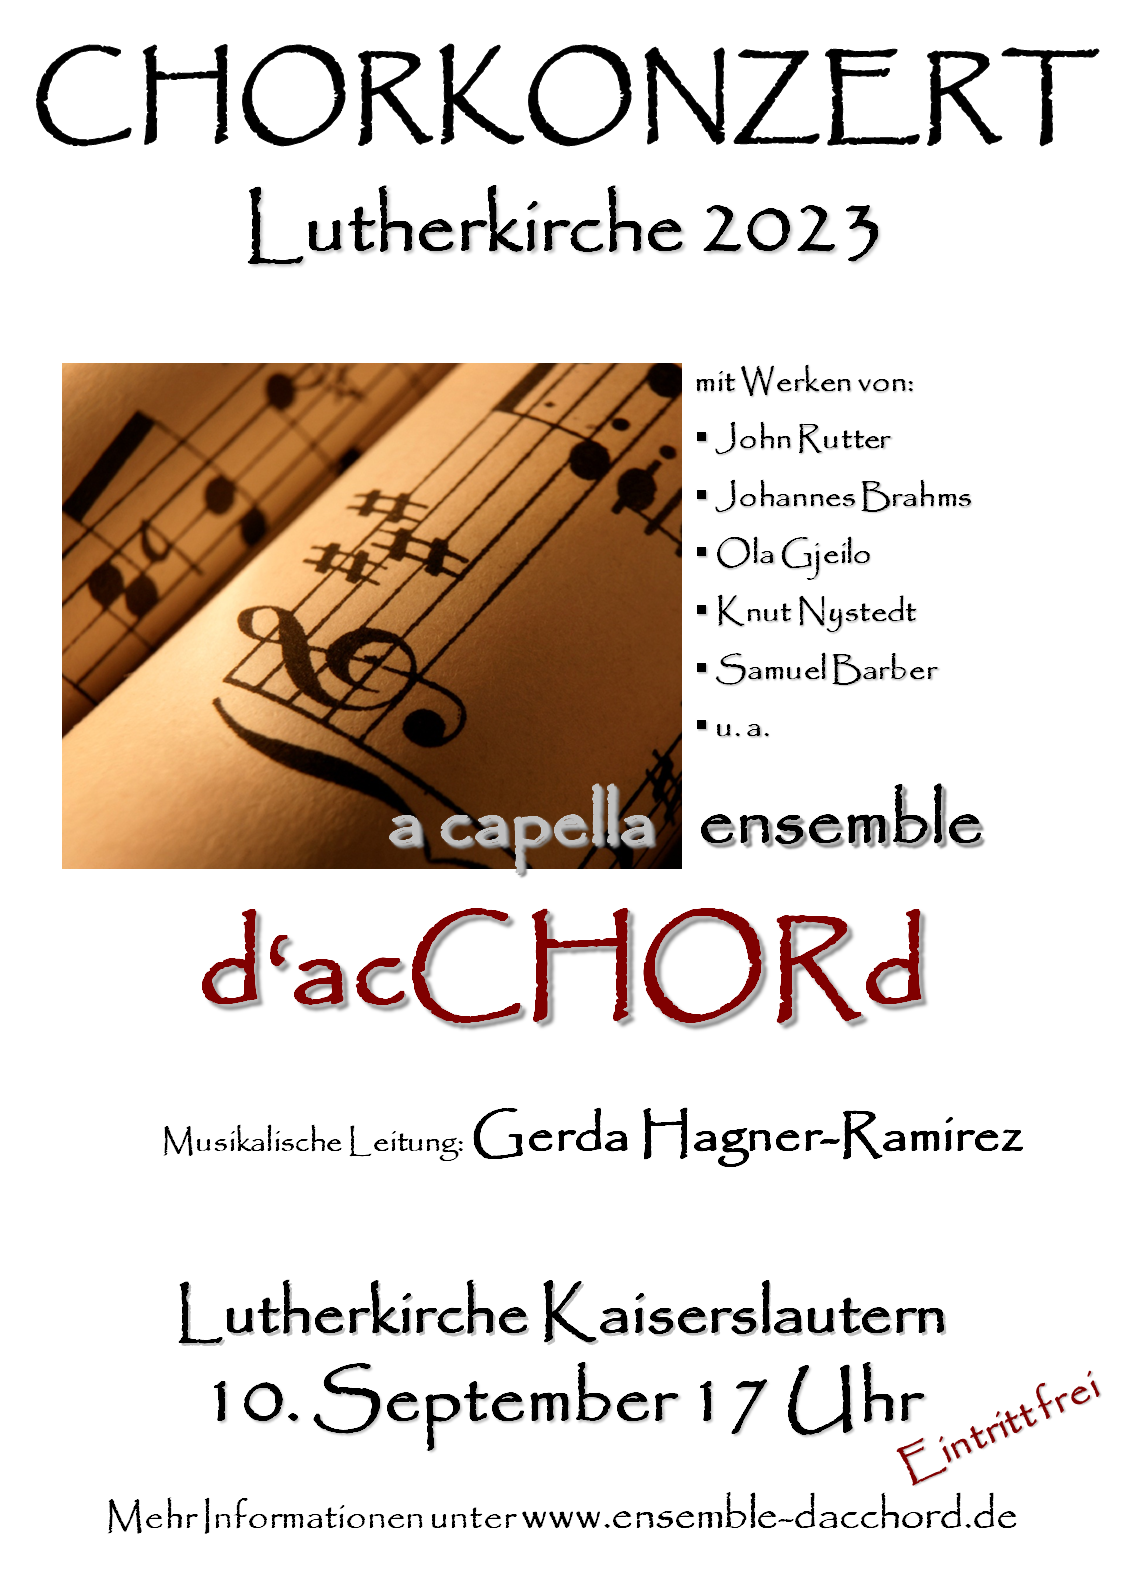 Konzert Lutherkirche 2023